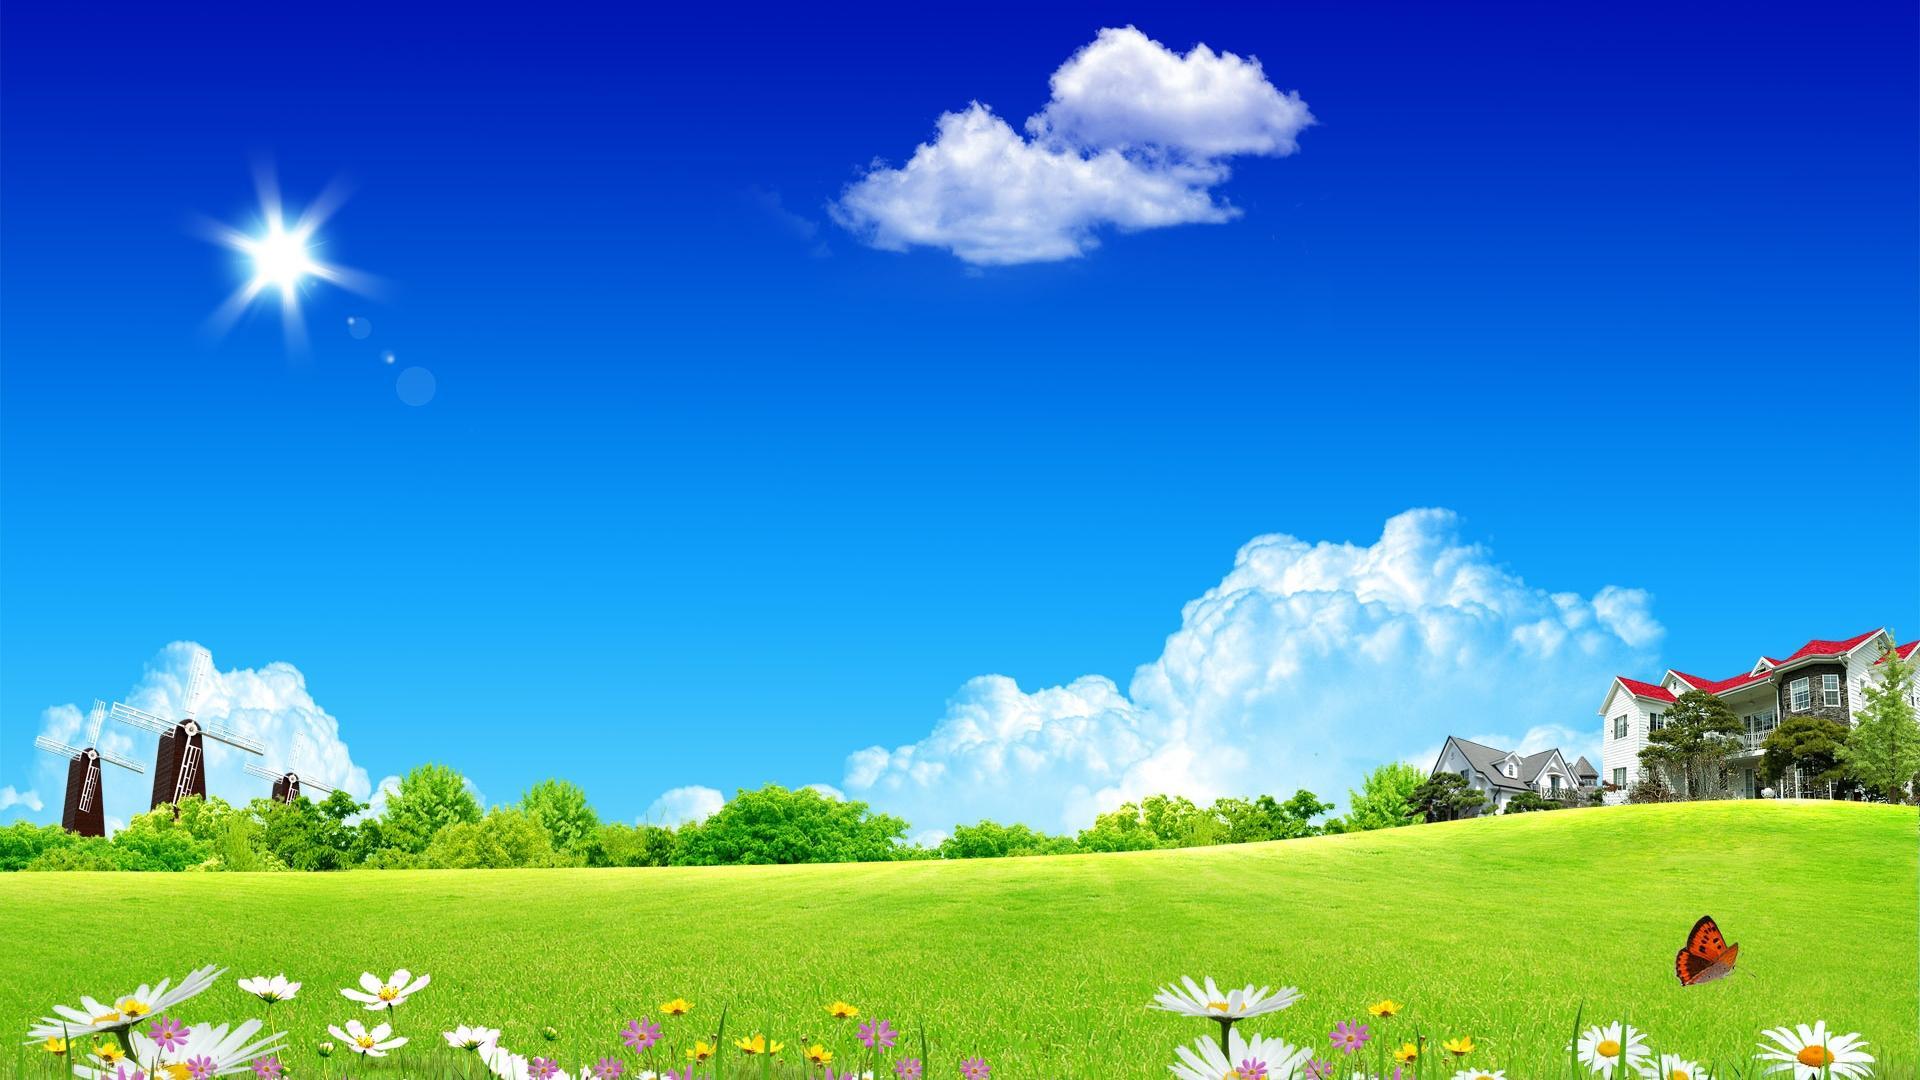 Dream Garden Of Summer Scenery Desktop Background Widescreen